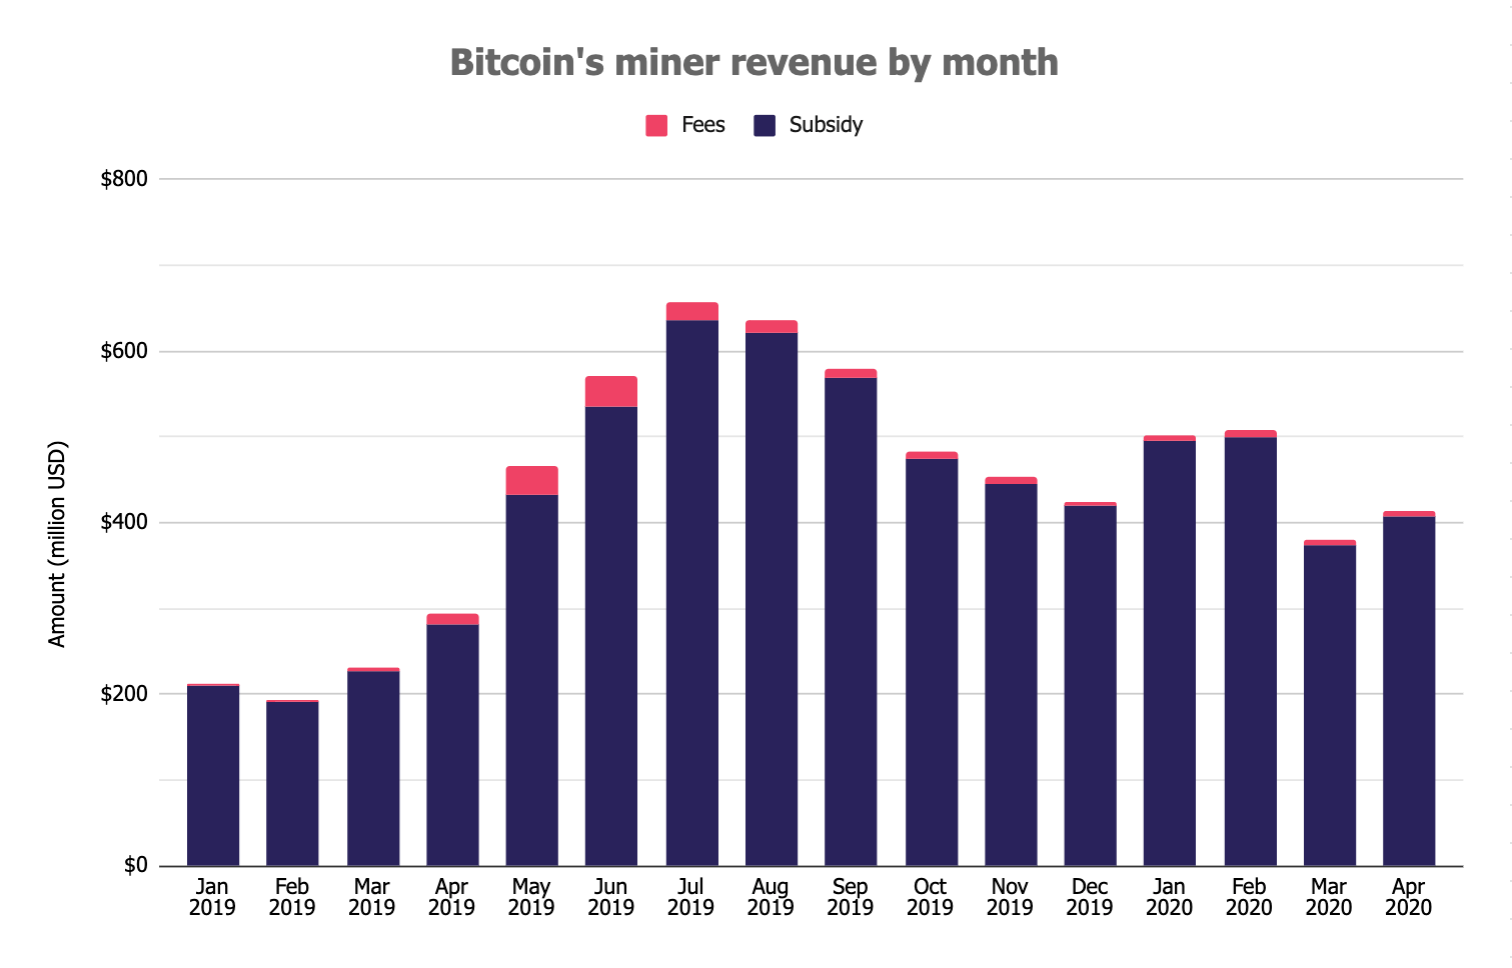 นักขุด Bitcoin ทำรายได้ $412.5 ล้านดอลลาร์สหรัฐ ในเดือนเมษายน เพิ่มขึ้น 8% เทียบกับเดือนก่อน